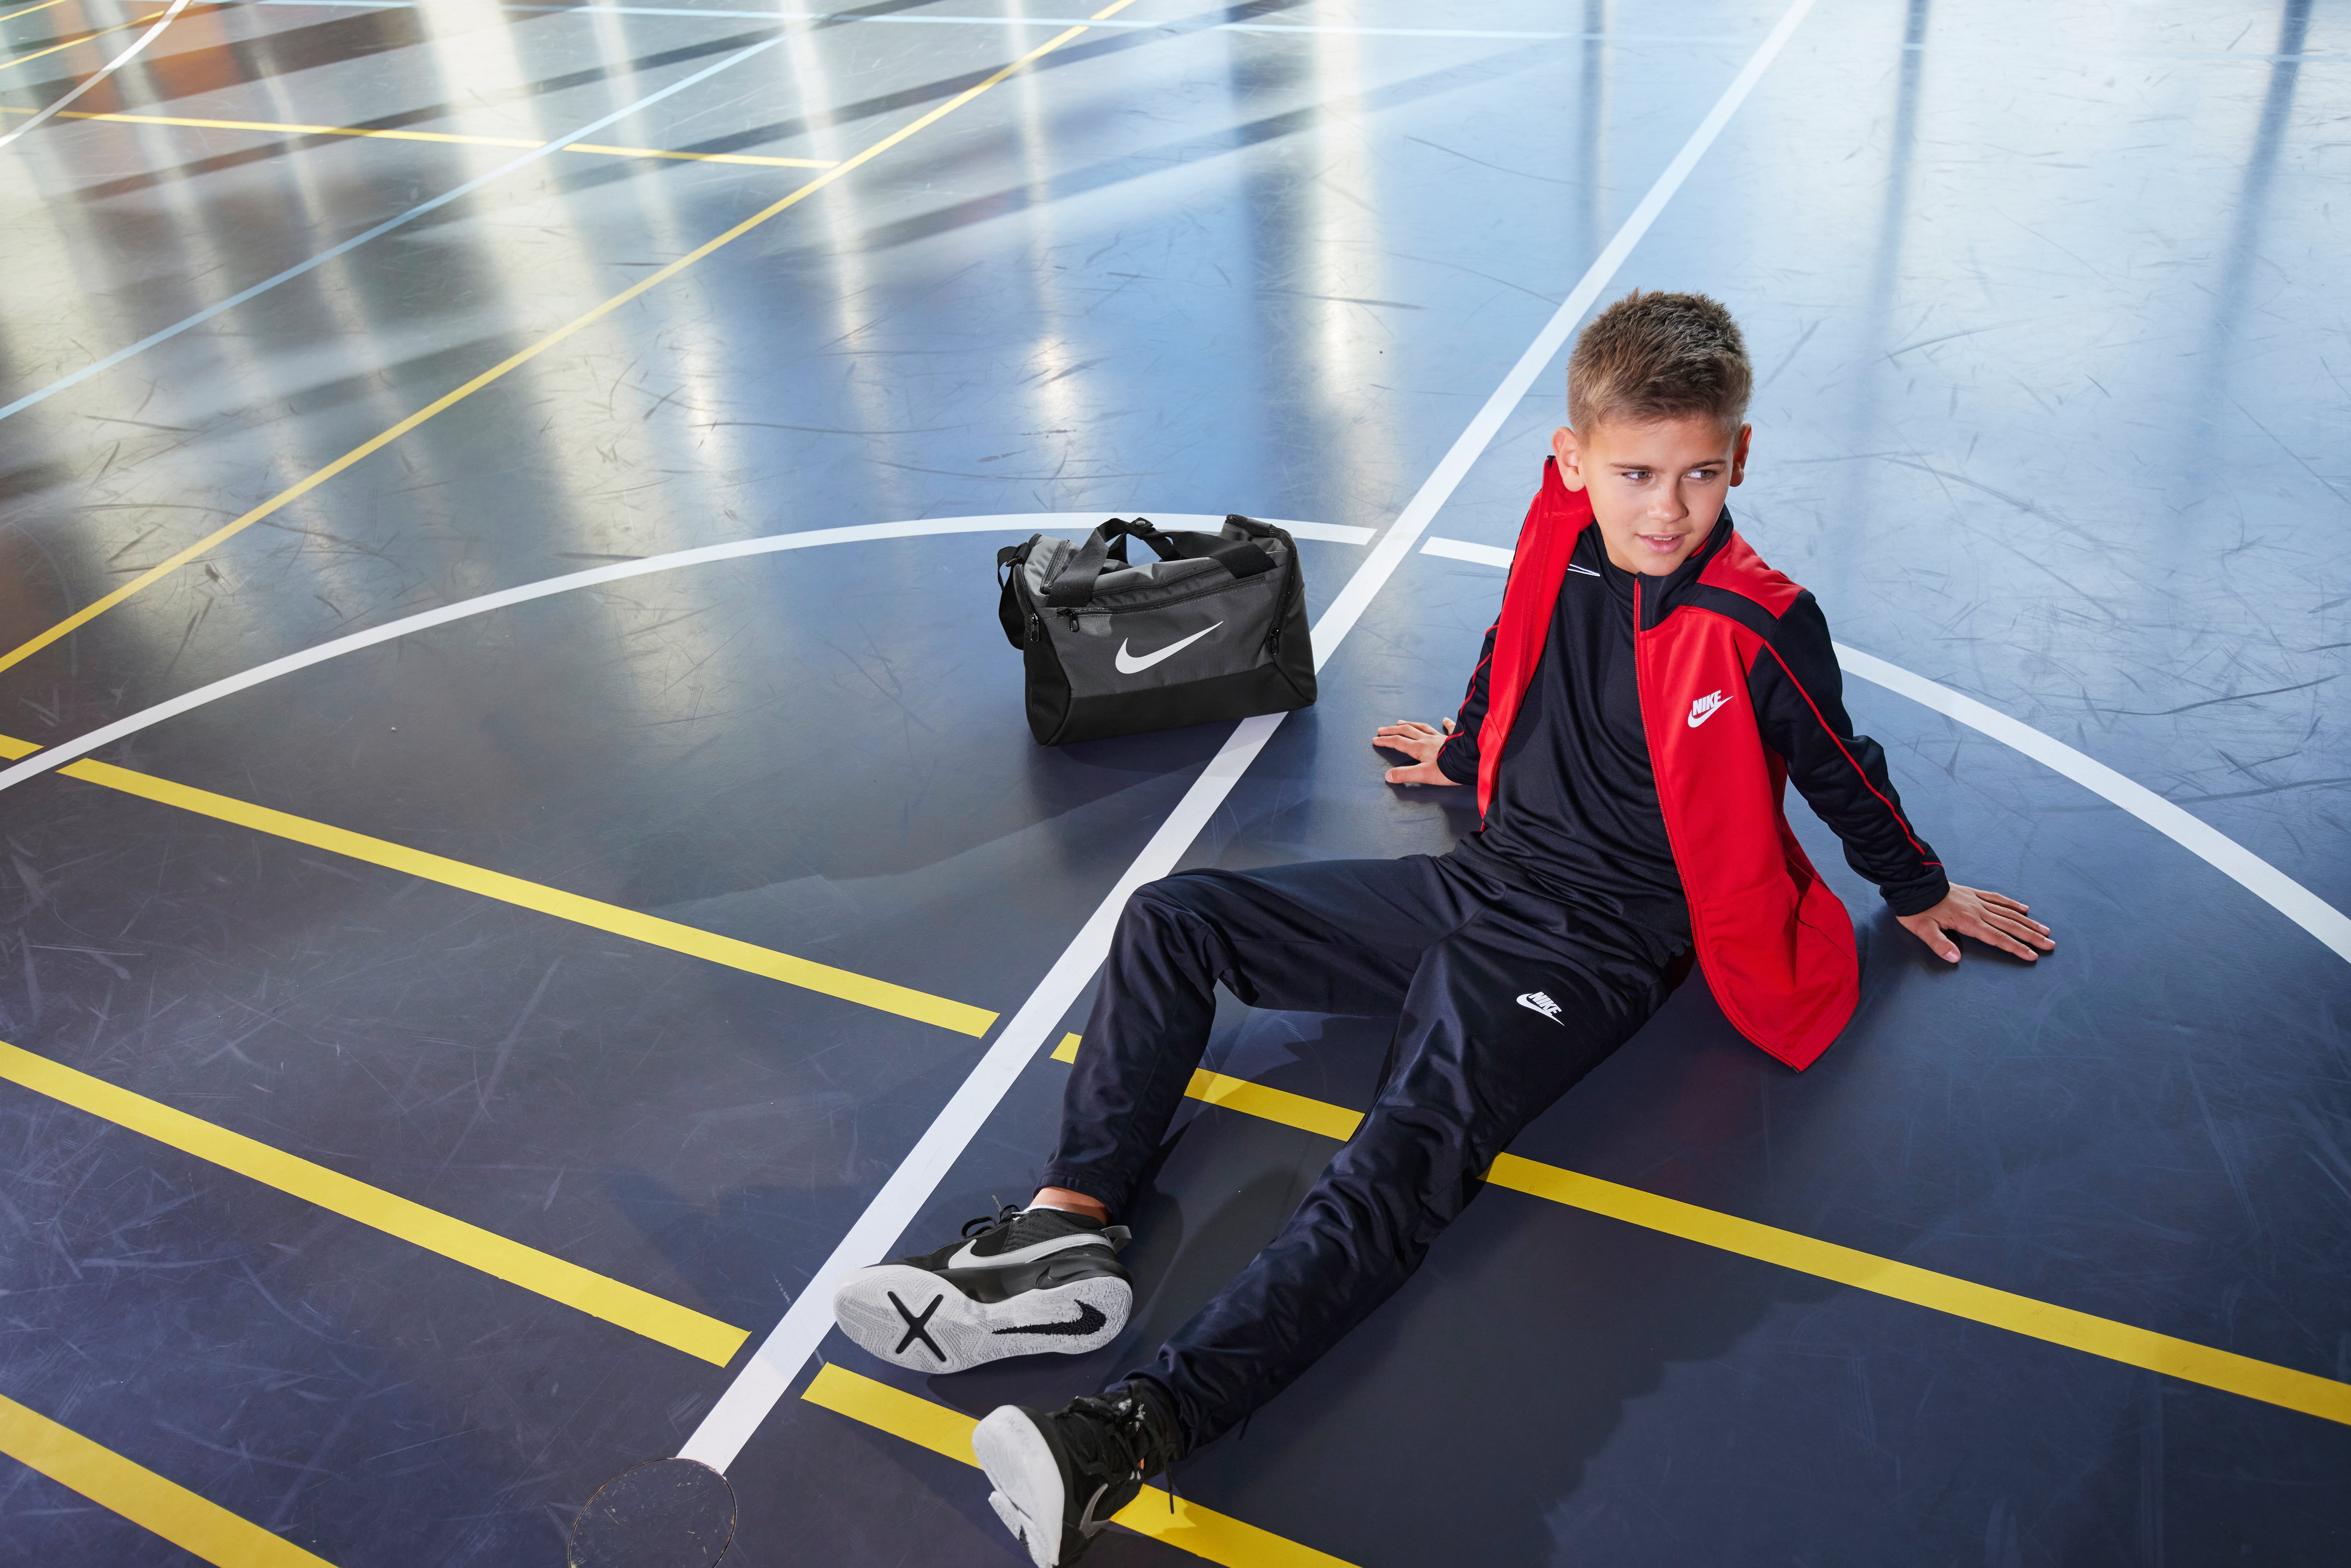 Nike Sportswear Trainingsanzug schwarz-rot Kids' Tracksuit Big